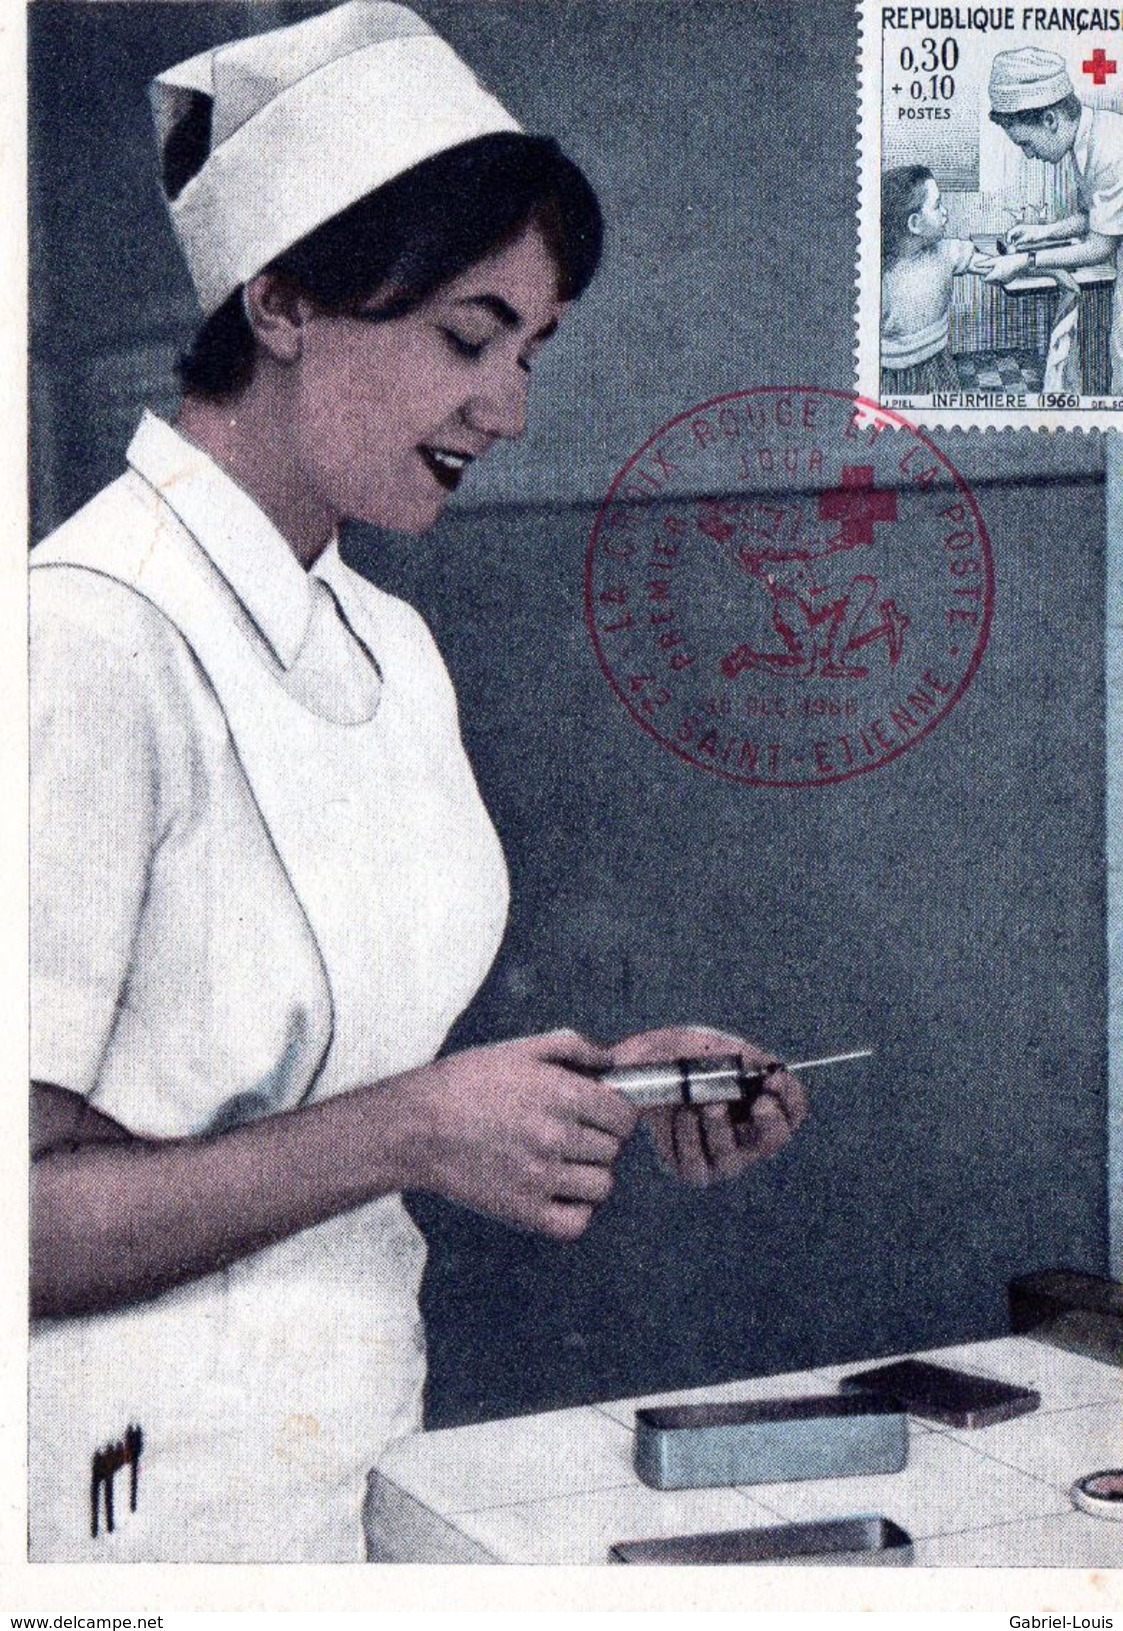 Infirmière 1966 / Injection / Piqûre / France / / Poste Saint-Etienne - Croix-Rouge